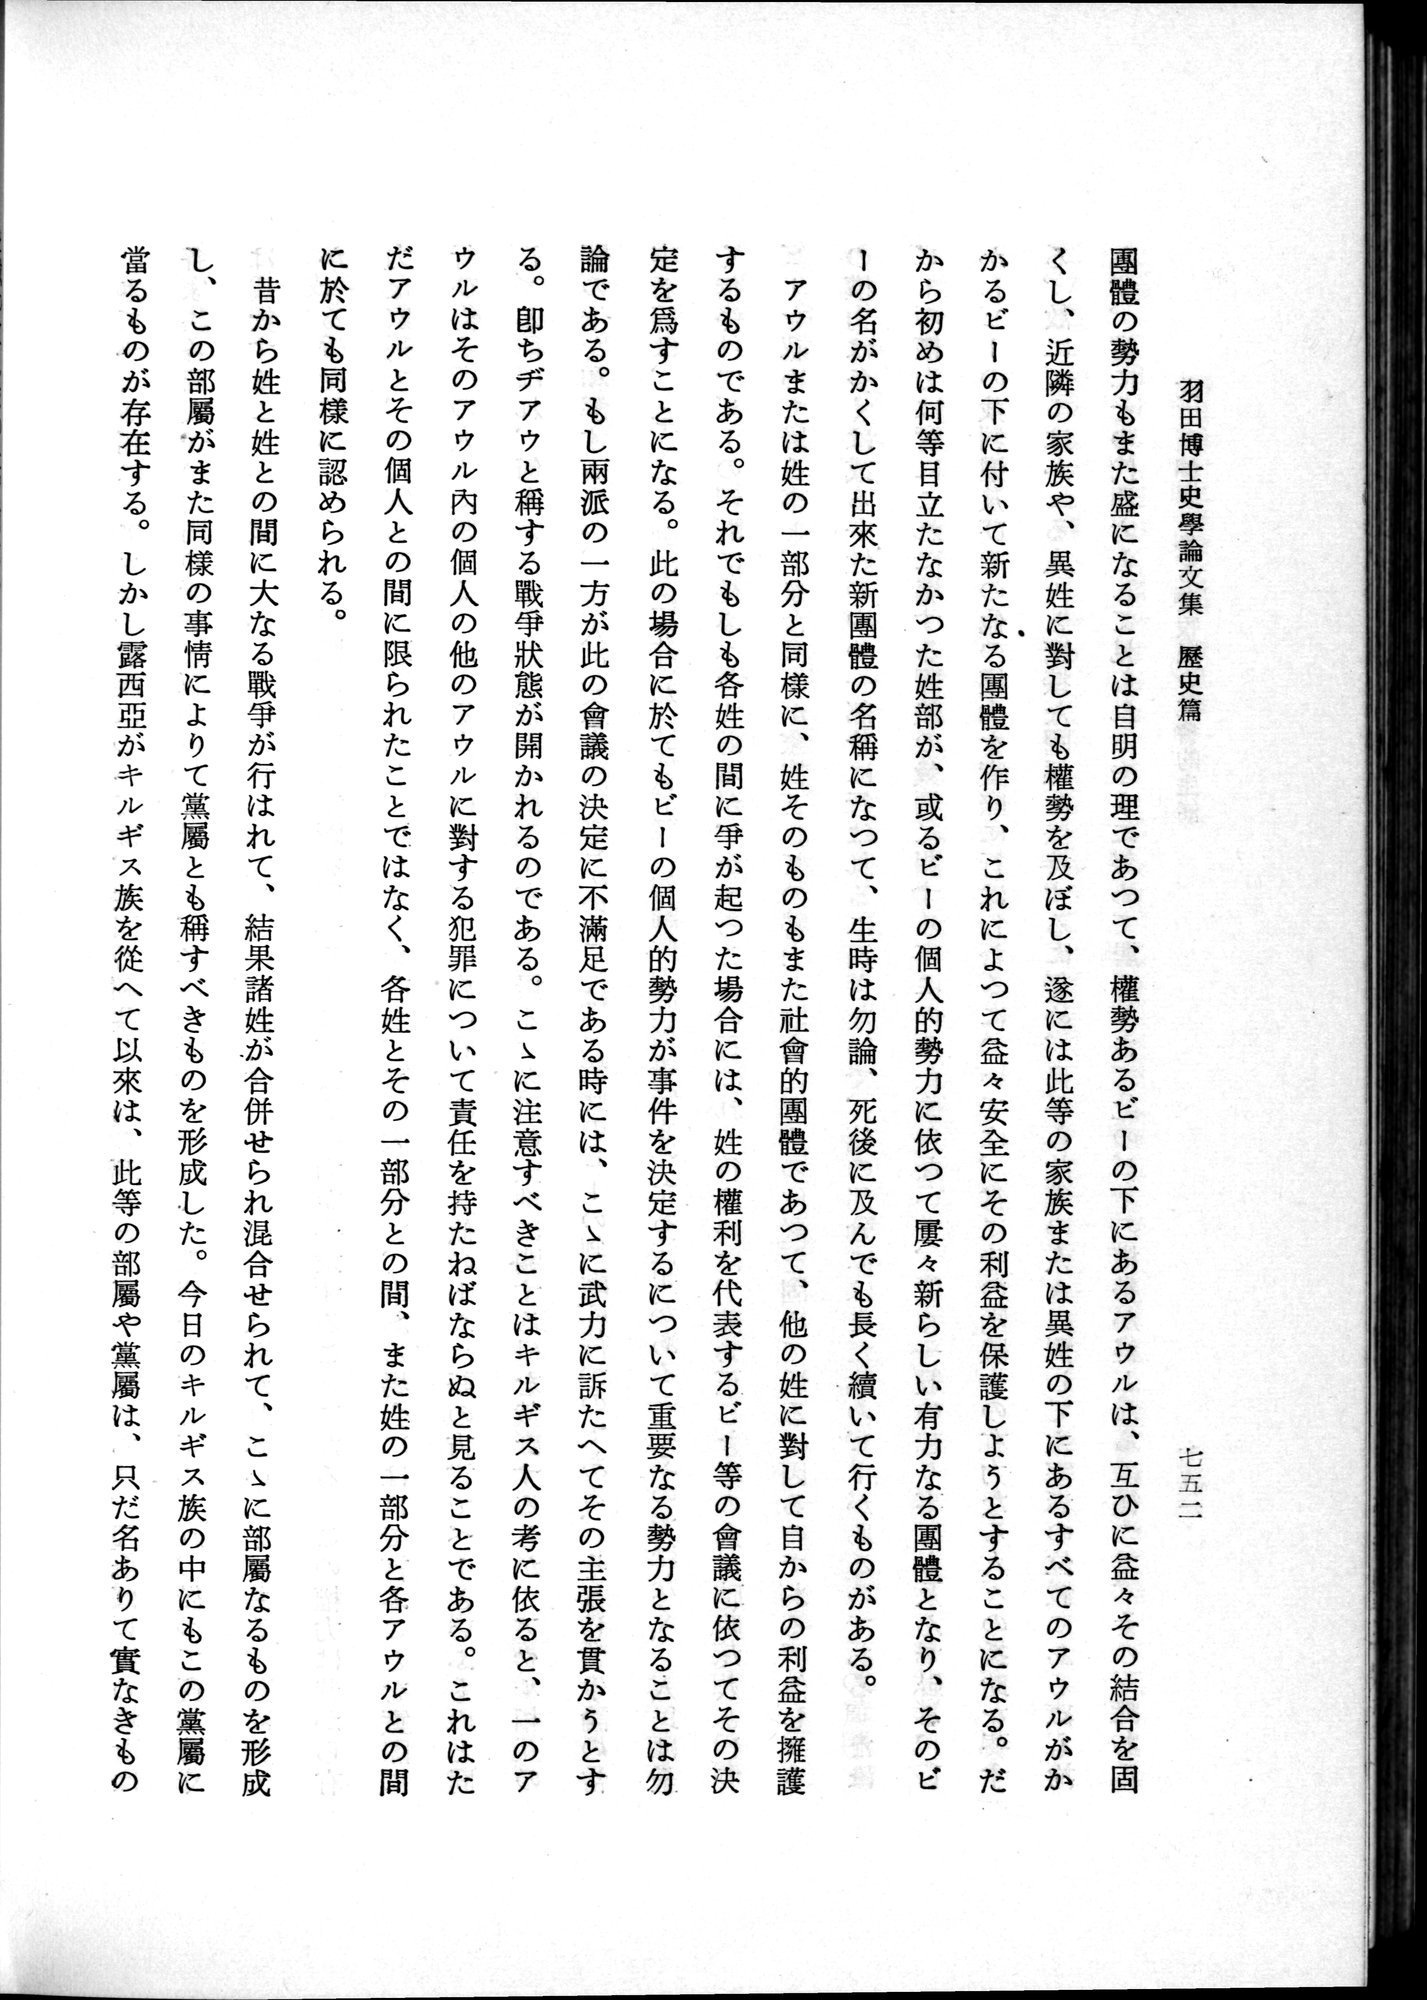 羽田博士史学論文集 : vol.1 / Page 790 (Grayscale High Resolution Image)